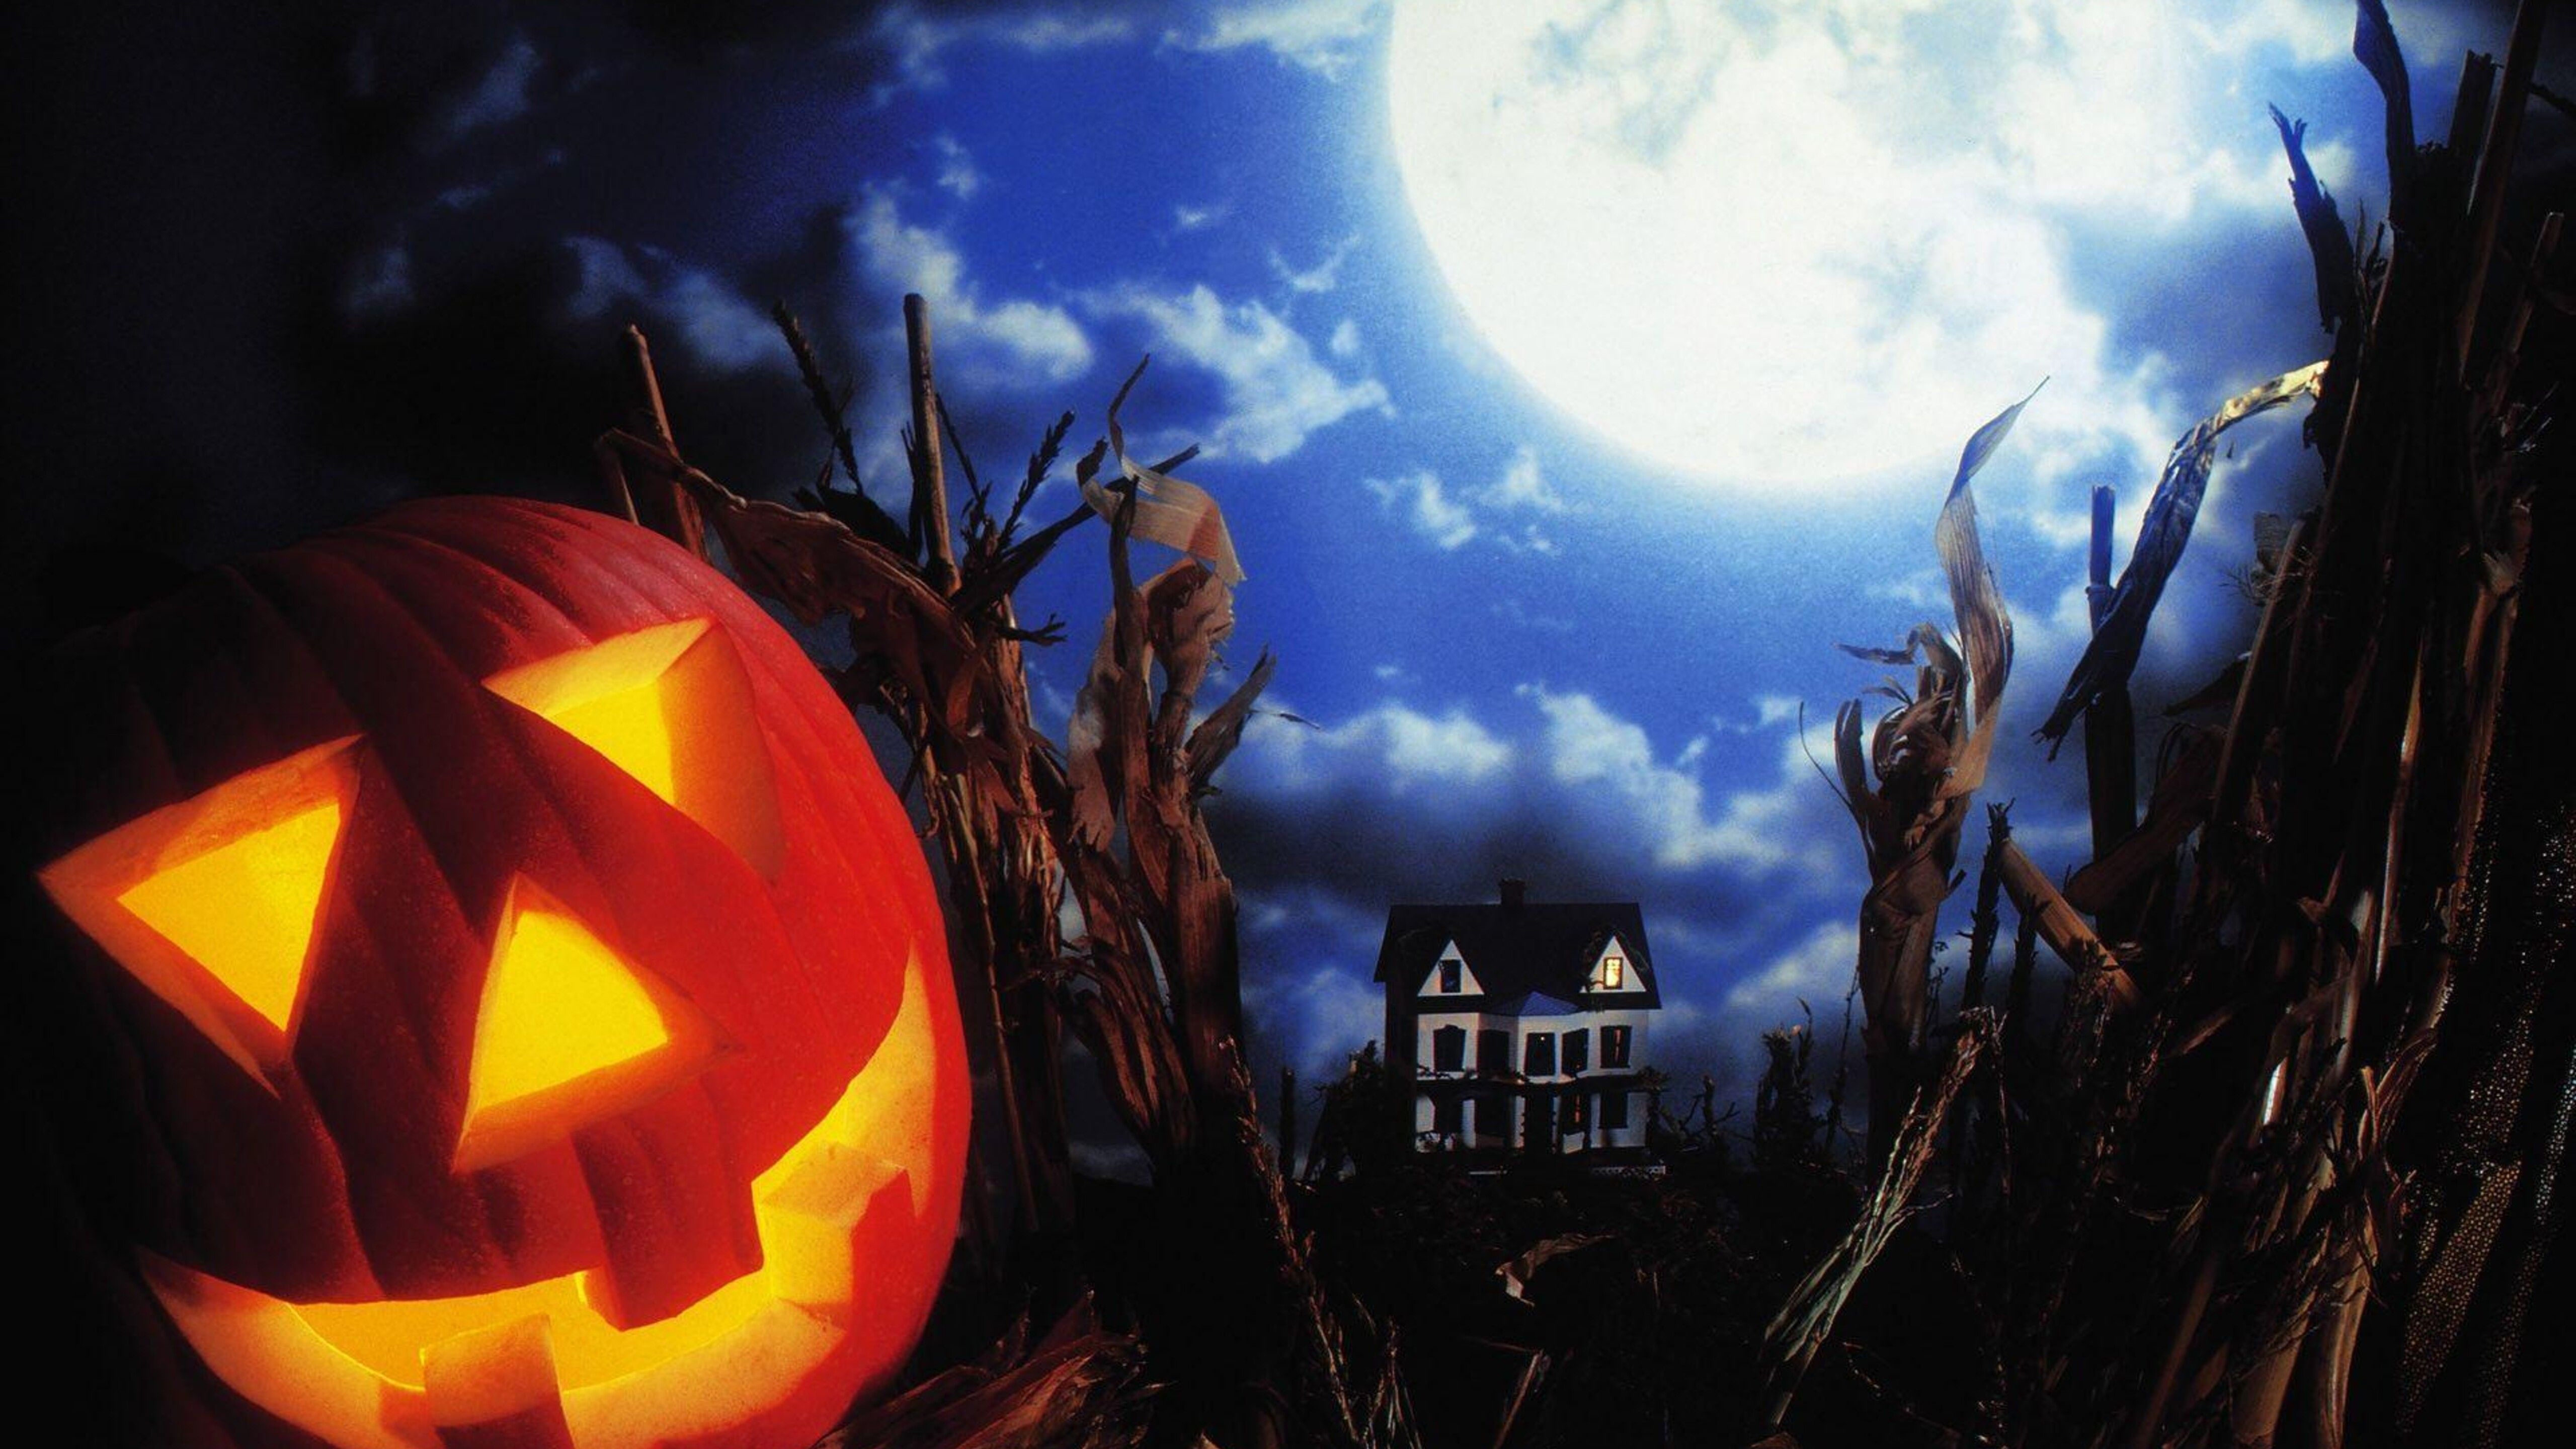 Big moon and scary Halloween pumpkin